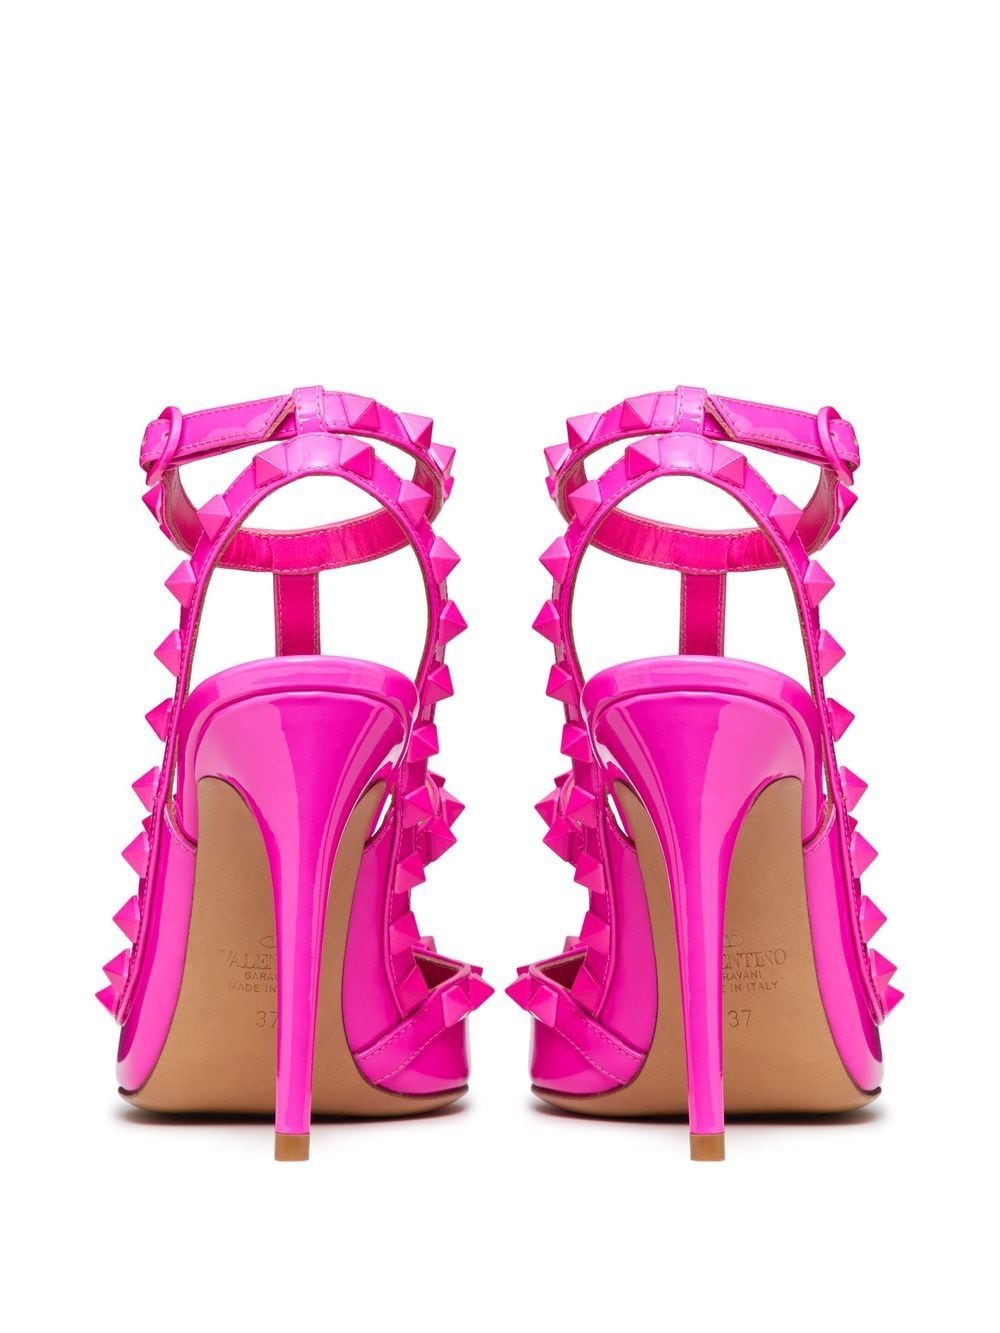 粉紅色Rockstud專利皮革鞋